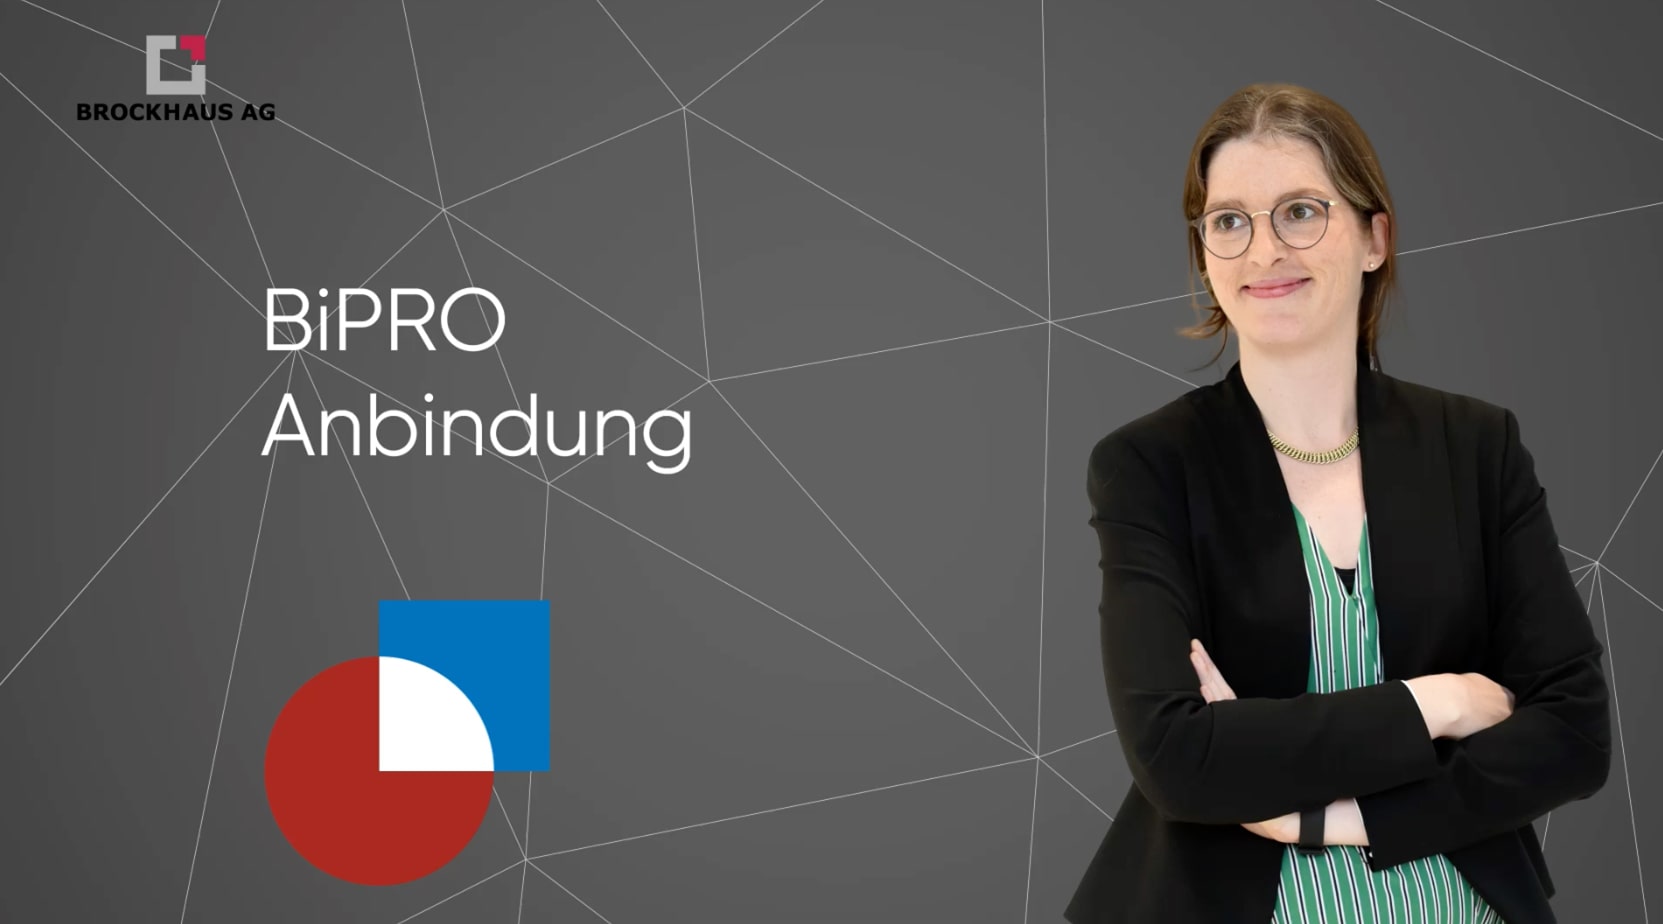 Sarah Hesse, BiPRO Expertin der BROCKHAUS AG, präsentiert die neue Folge der Videoserie zur Anbindung eines BiPRO-Webservices